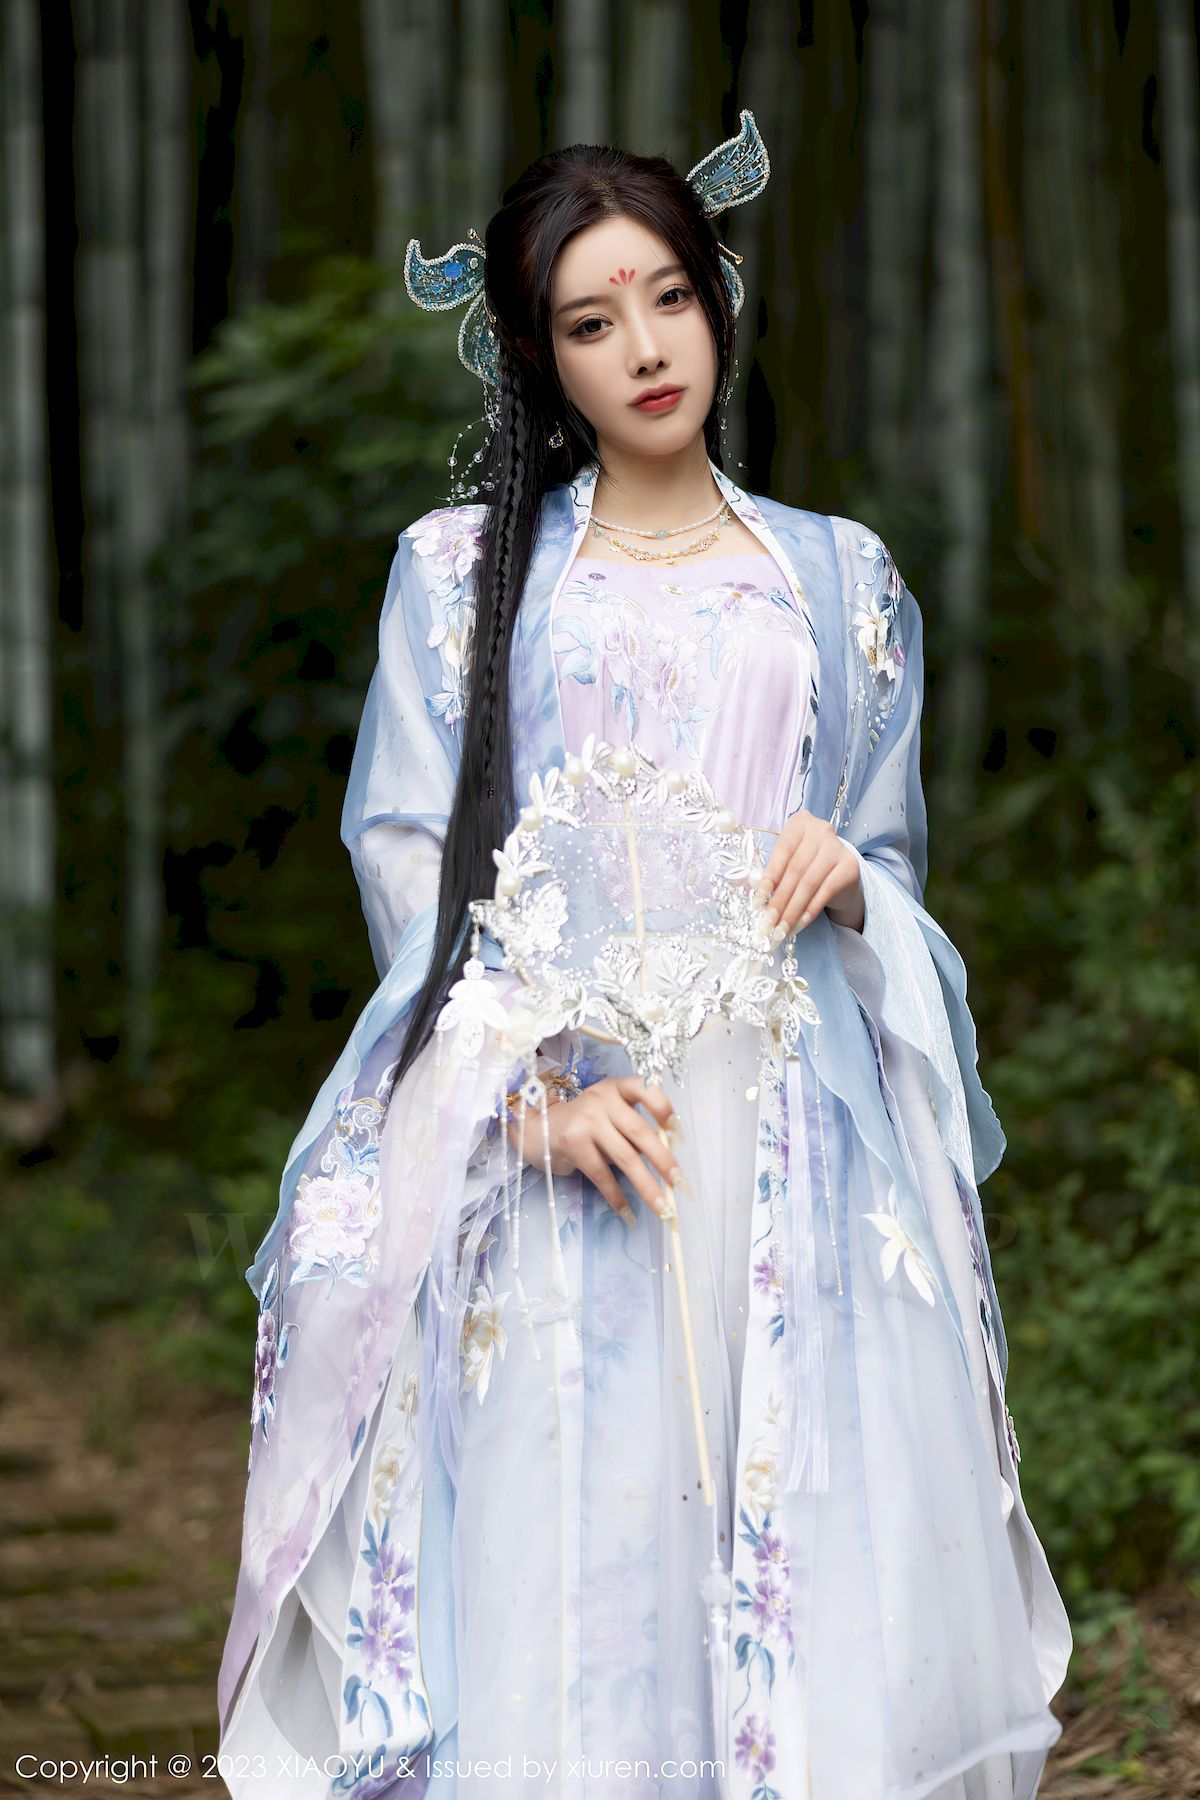 杨晨晨Yome淡蓝紫色古装服饰白色丝袜写真